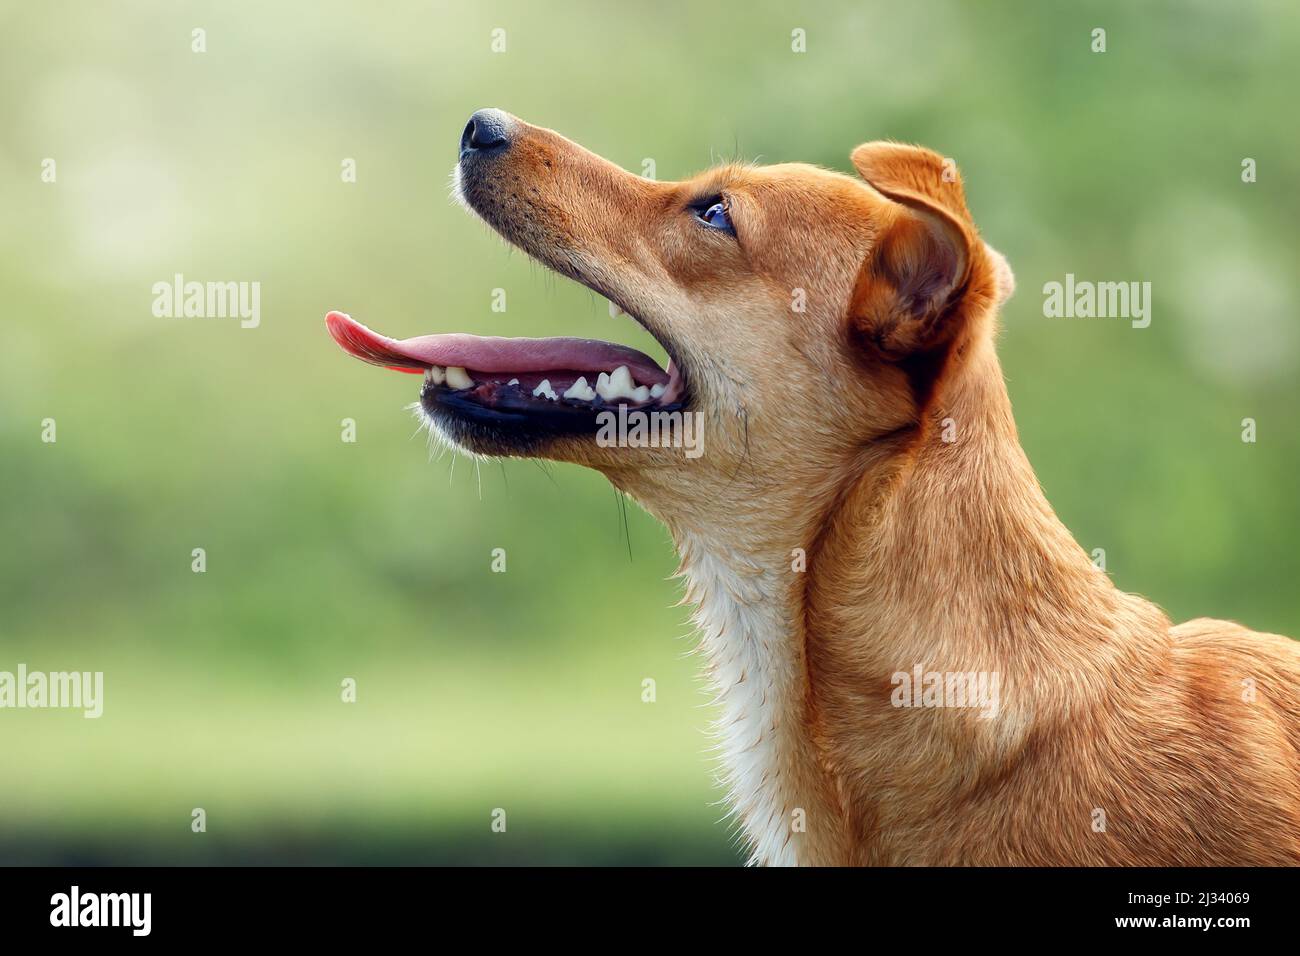 Schönes orangefarbenes Hundeportrait von der Seite mit offenem Mund, das Zunge und Zähne zeigt. Welpe wartet auf etwas leckeres. Stockfoto